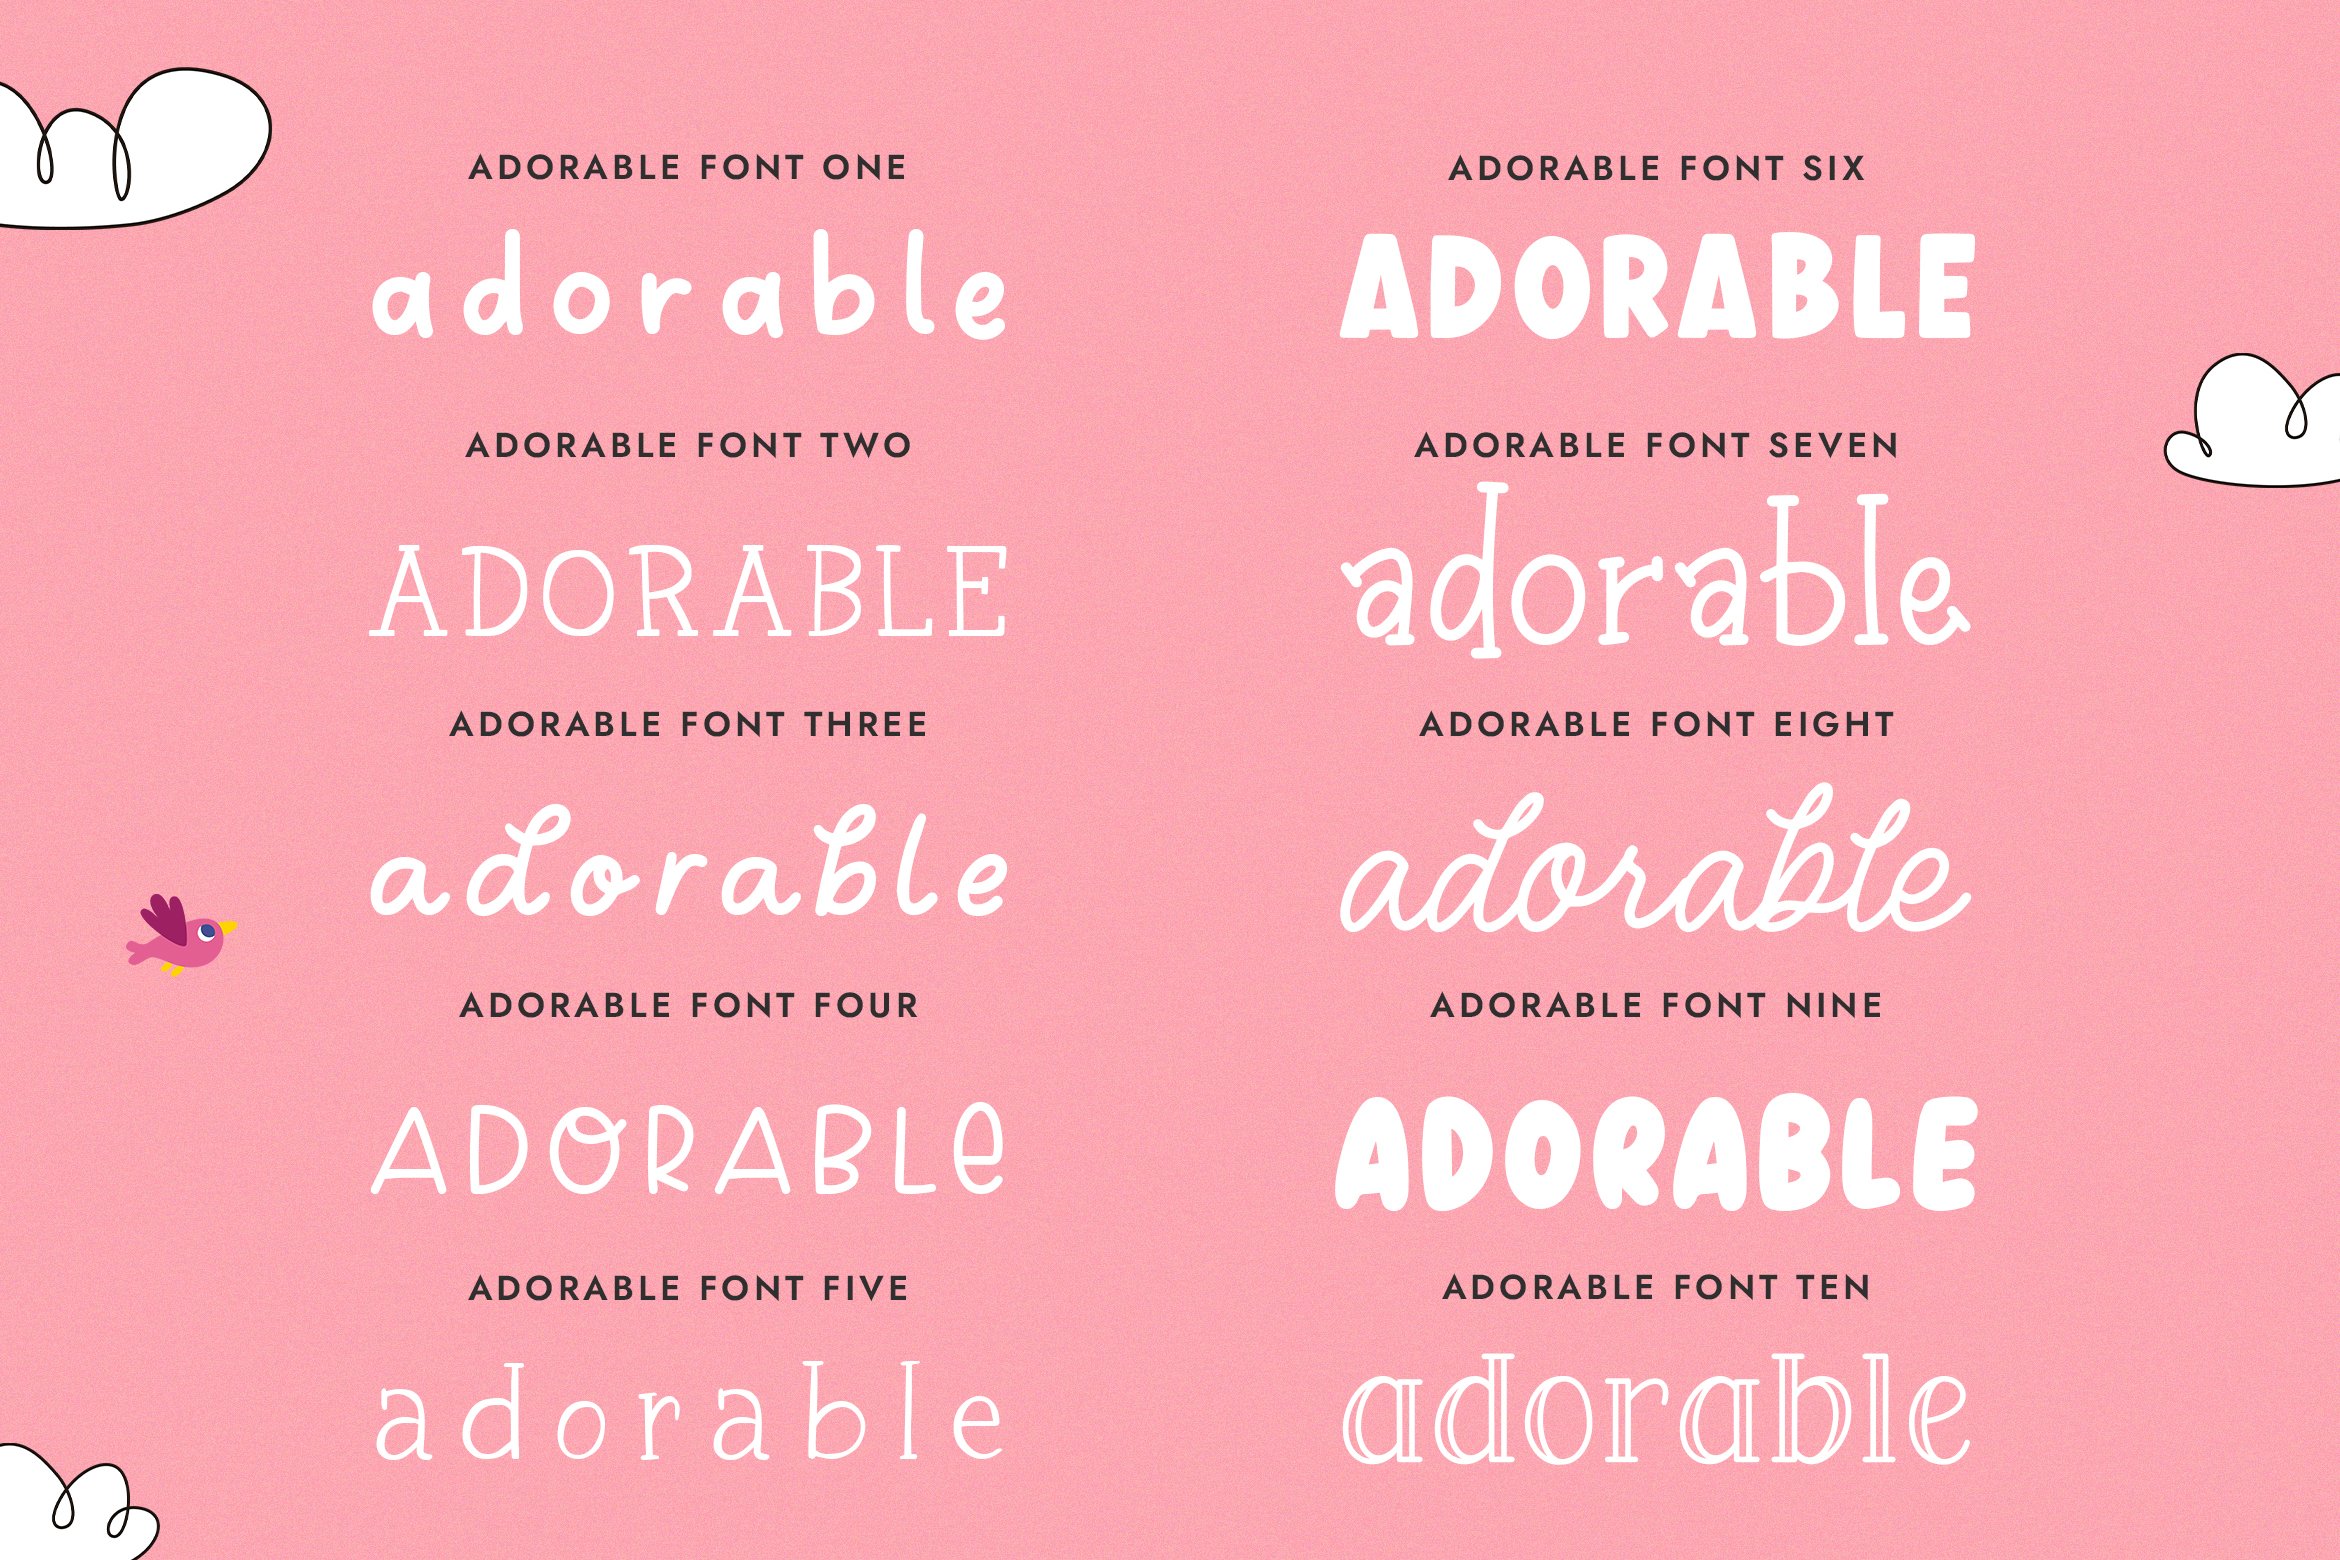 The Adorable Font Bundle (10 Fonts) preview image.